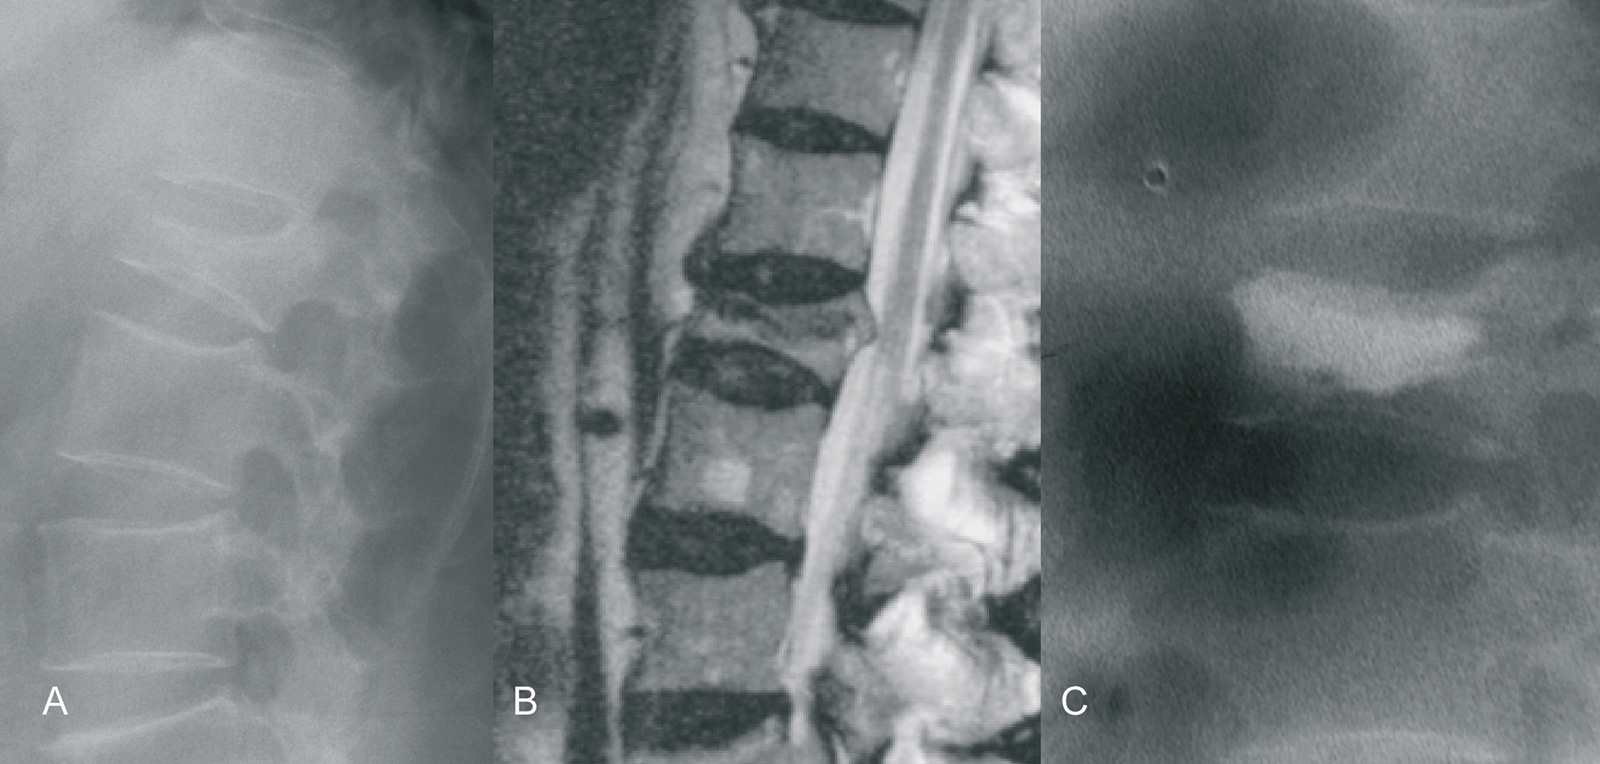 Abb. 9-4: Patient mit einem Keilwirbel LWK 2 und starken Schmerzen (A-B), nach Durchführung einer Kyphoplastik (C) (Eigentum des Instituts für Klinische Radiologie der Universität Münster)